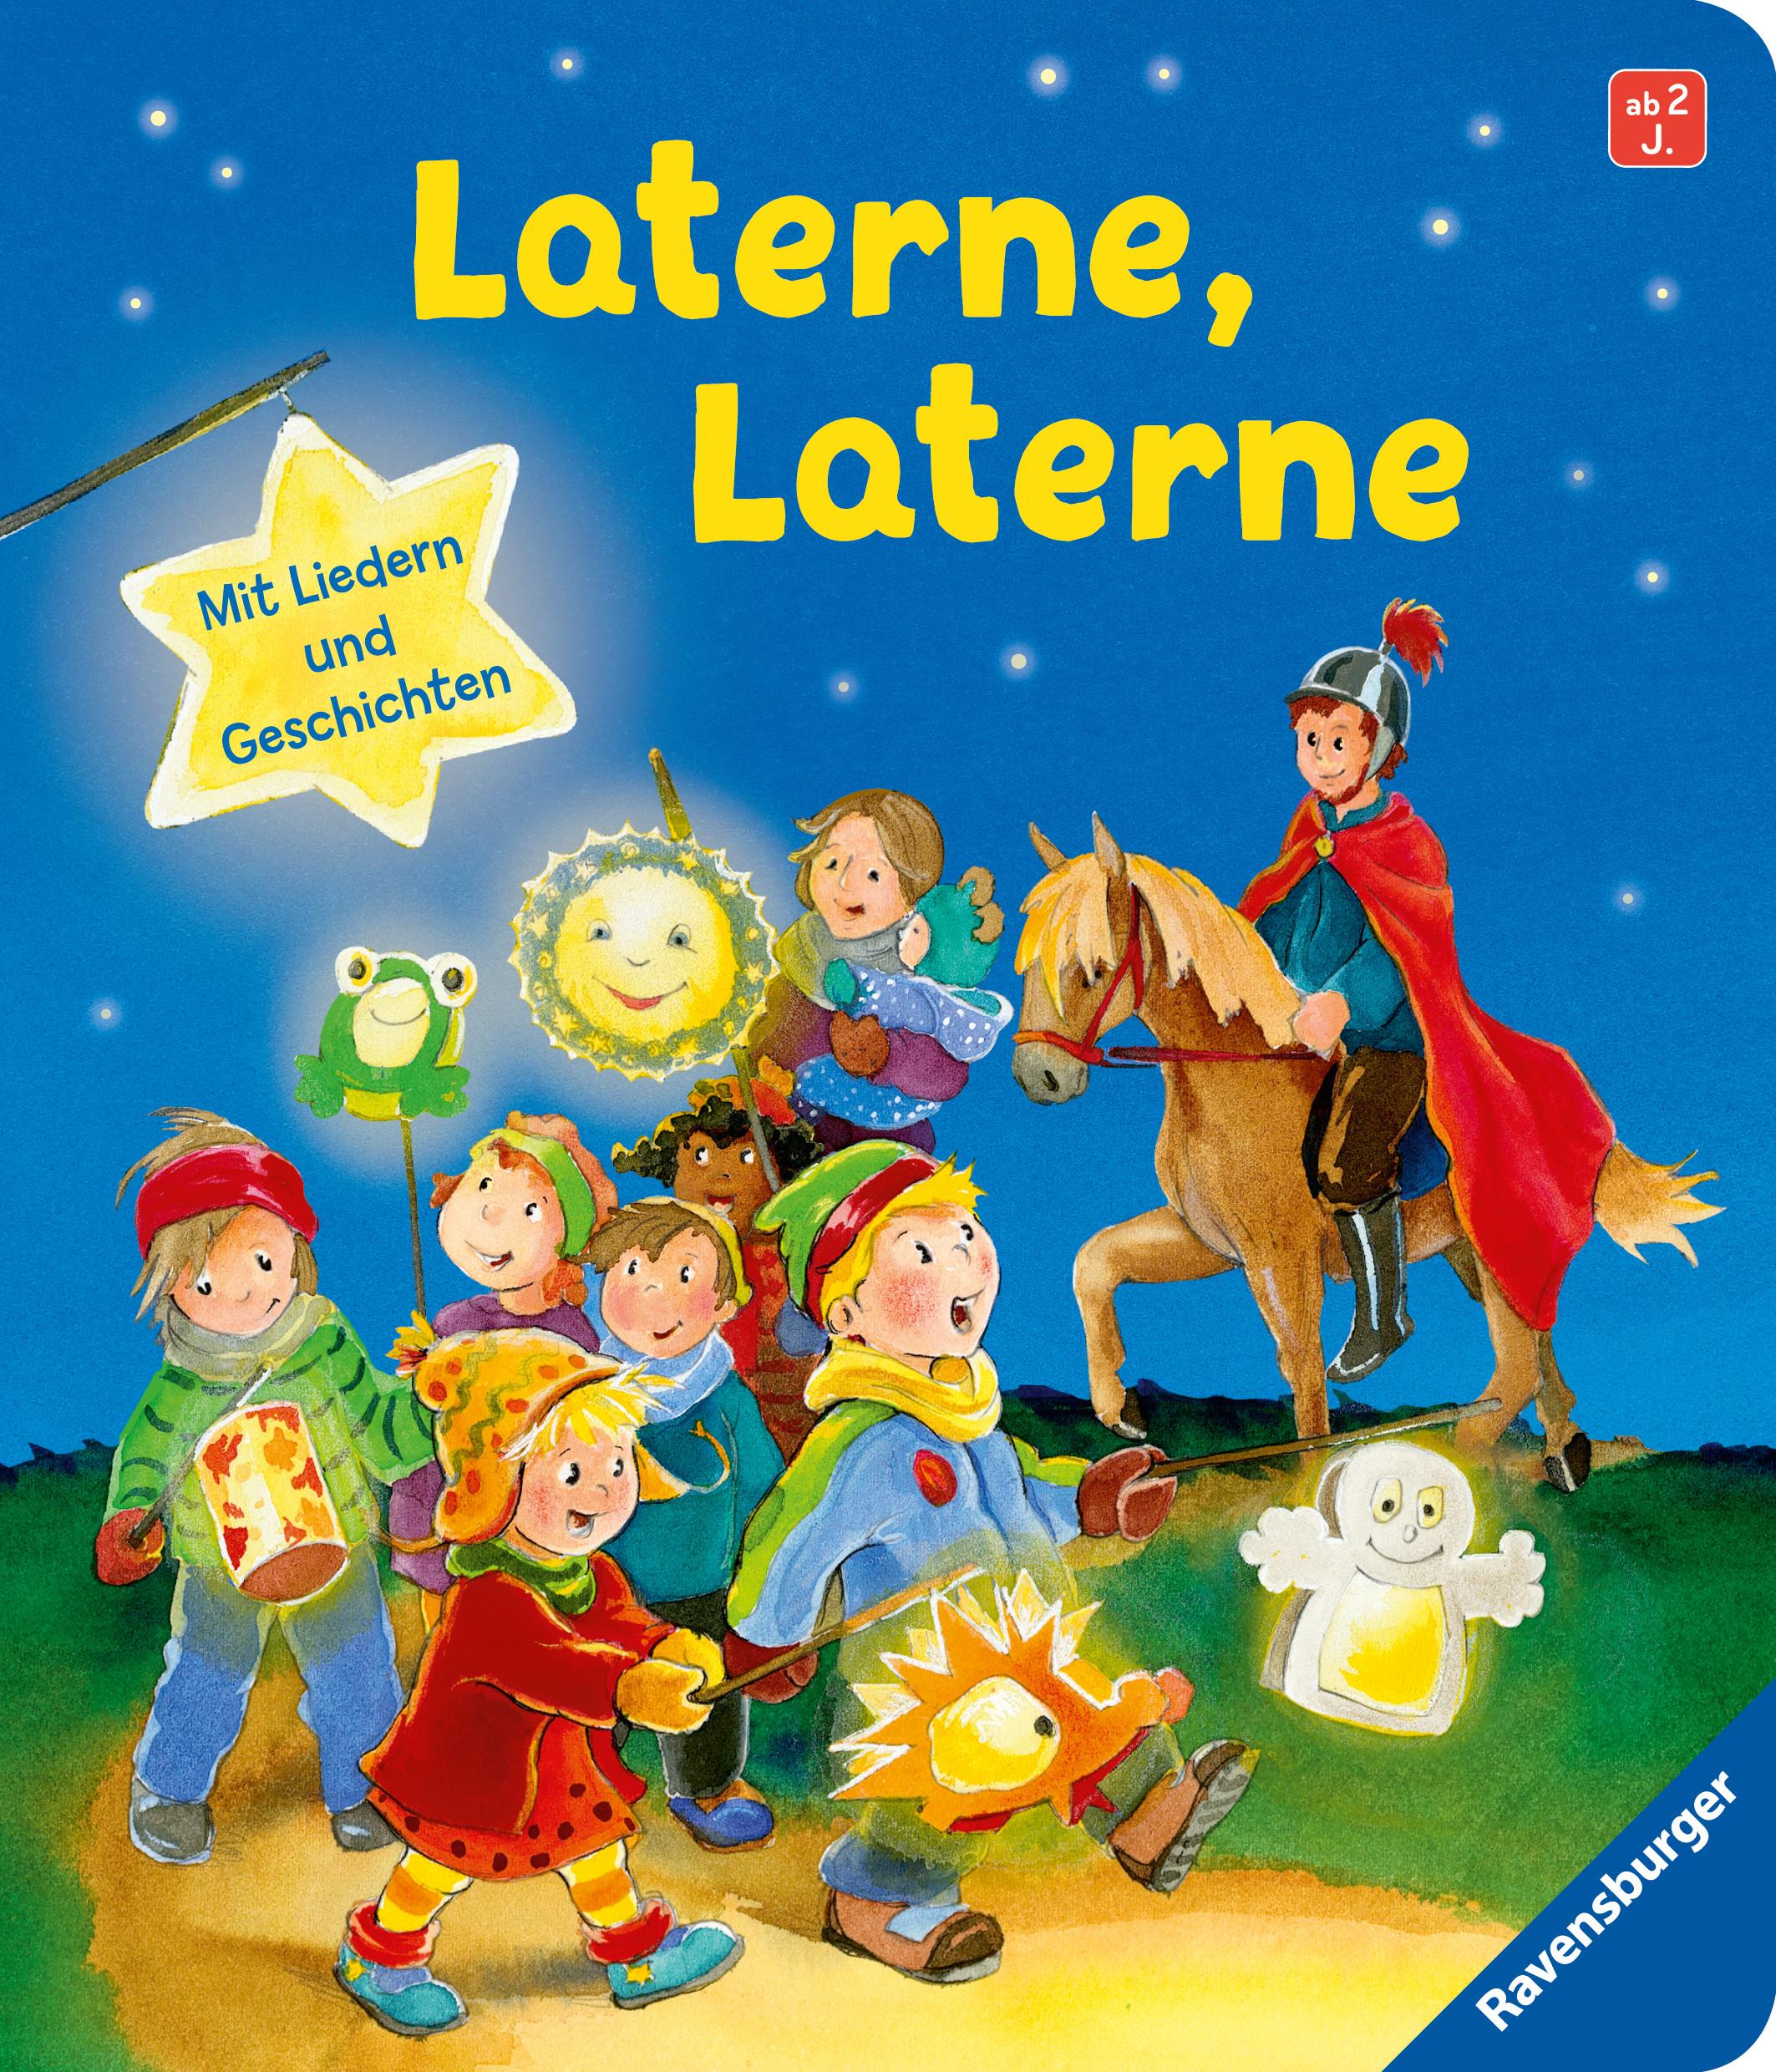 Laterne, Laterne; Laterne, Laterne; Ill. v. Weiling-Bäcker, Mechthild; Deutsch; Farbig illustriert;